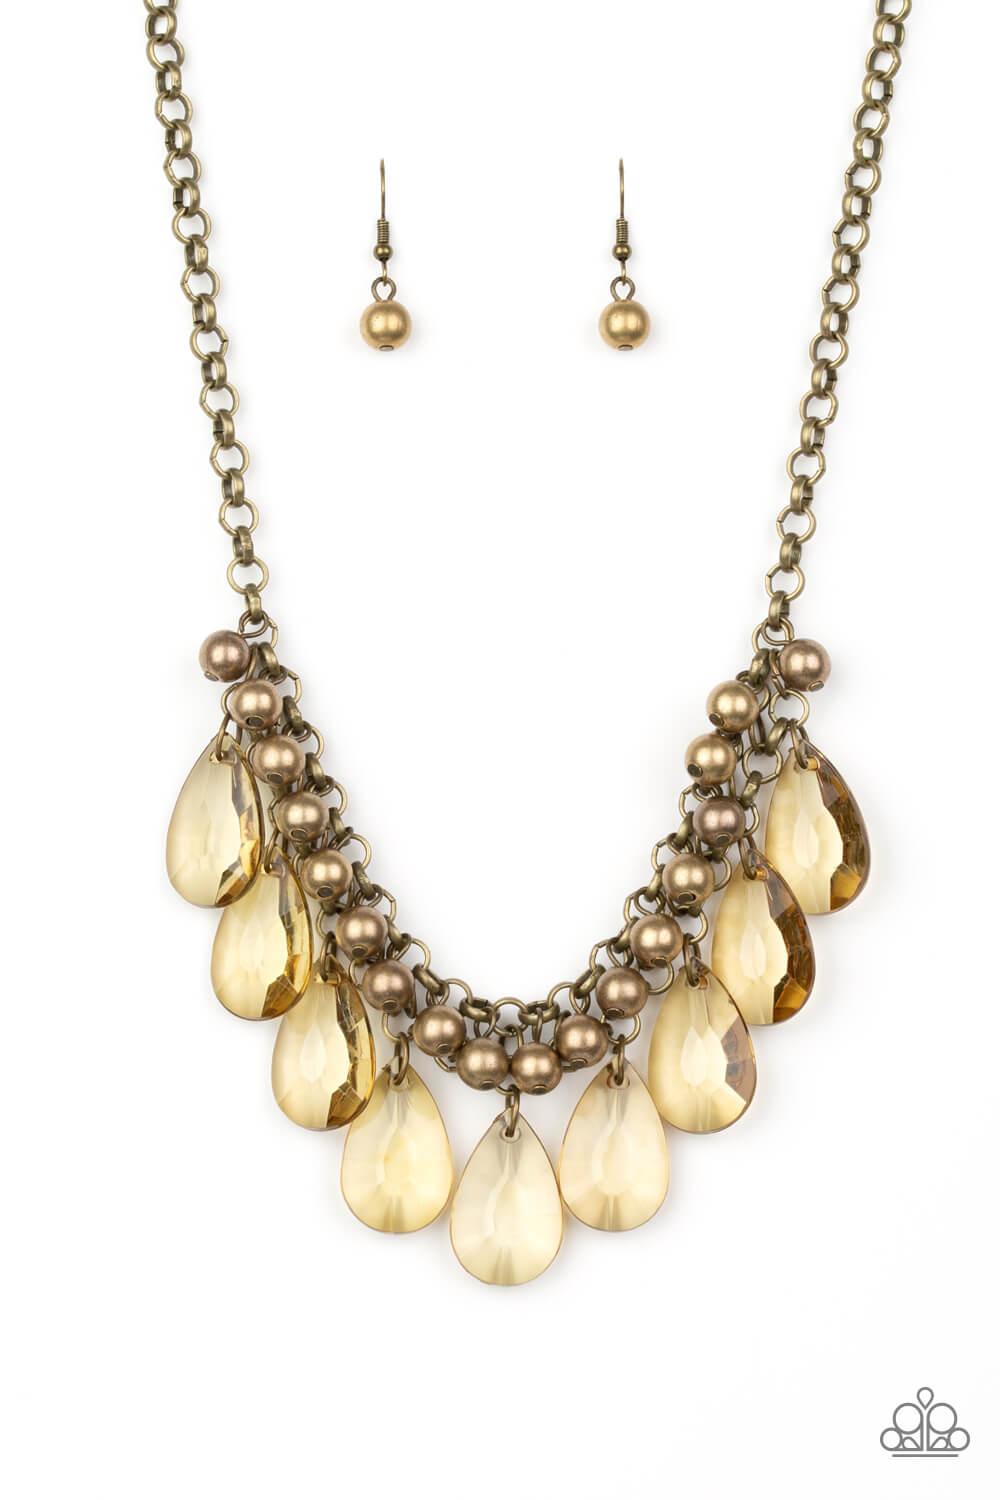 Fashionista Flair - Brass Necklace Set - Princess Glam Shop